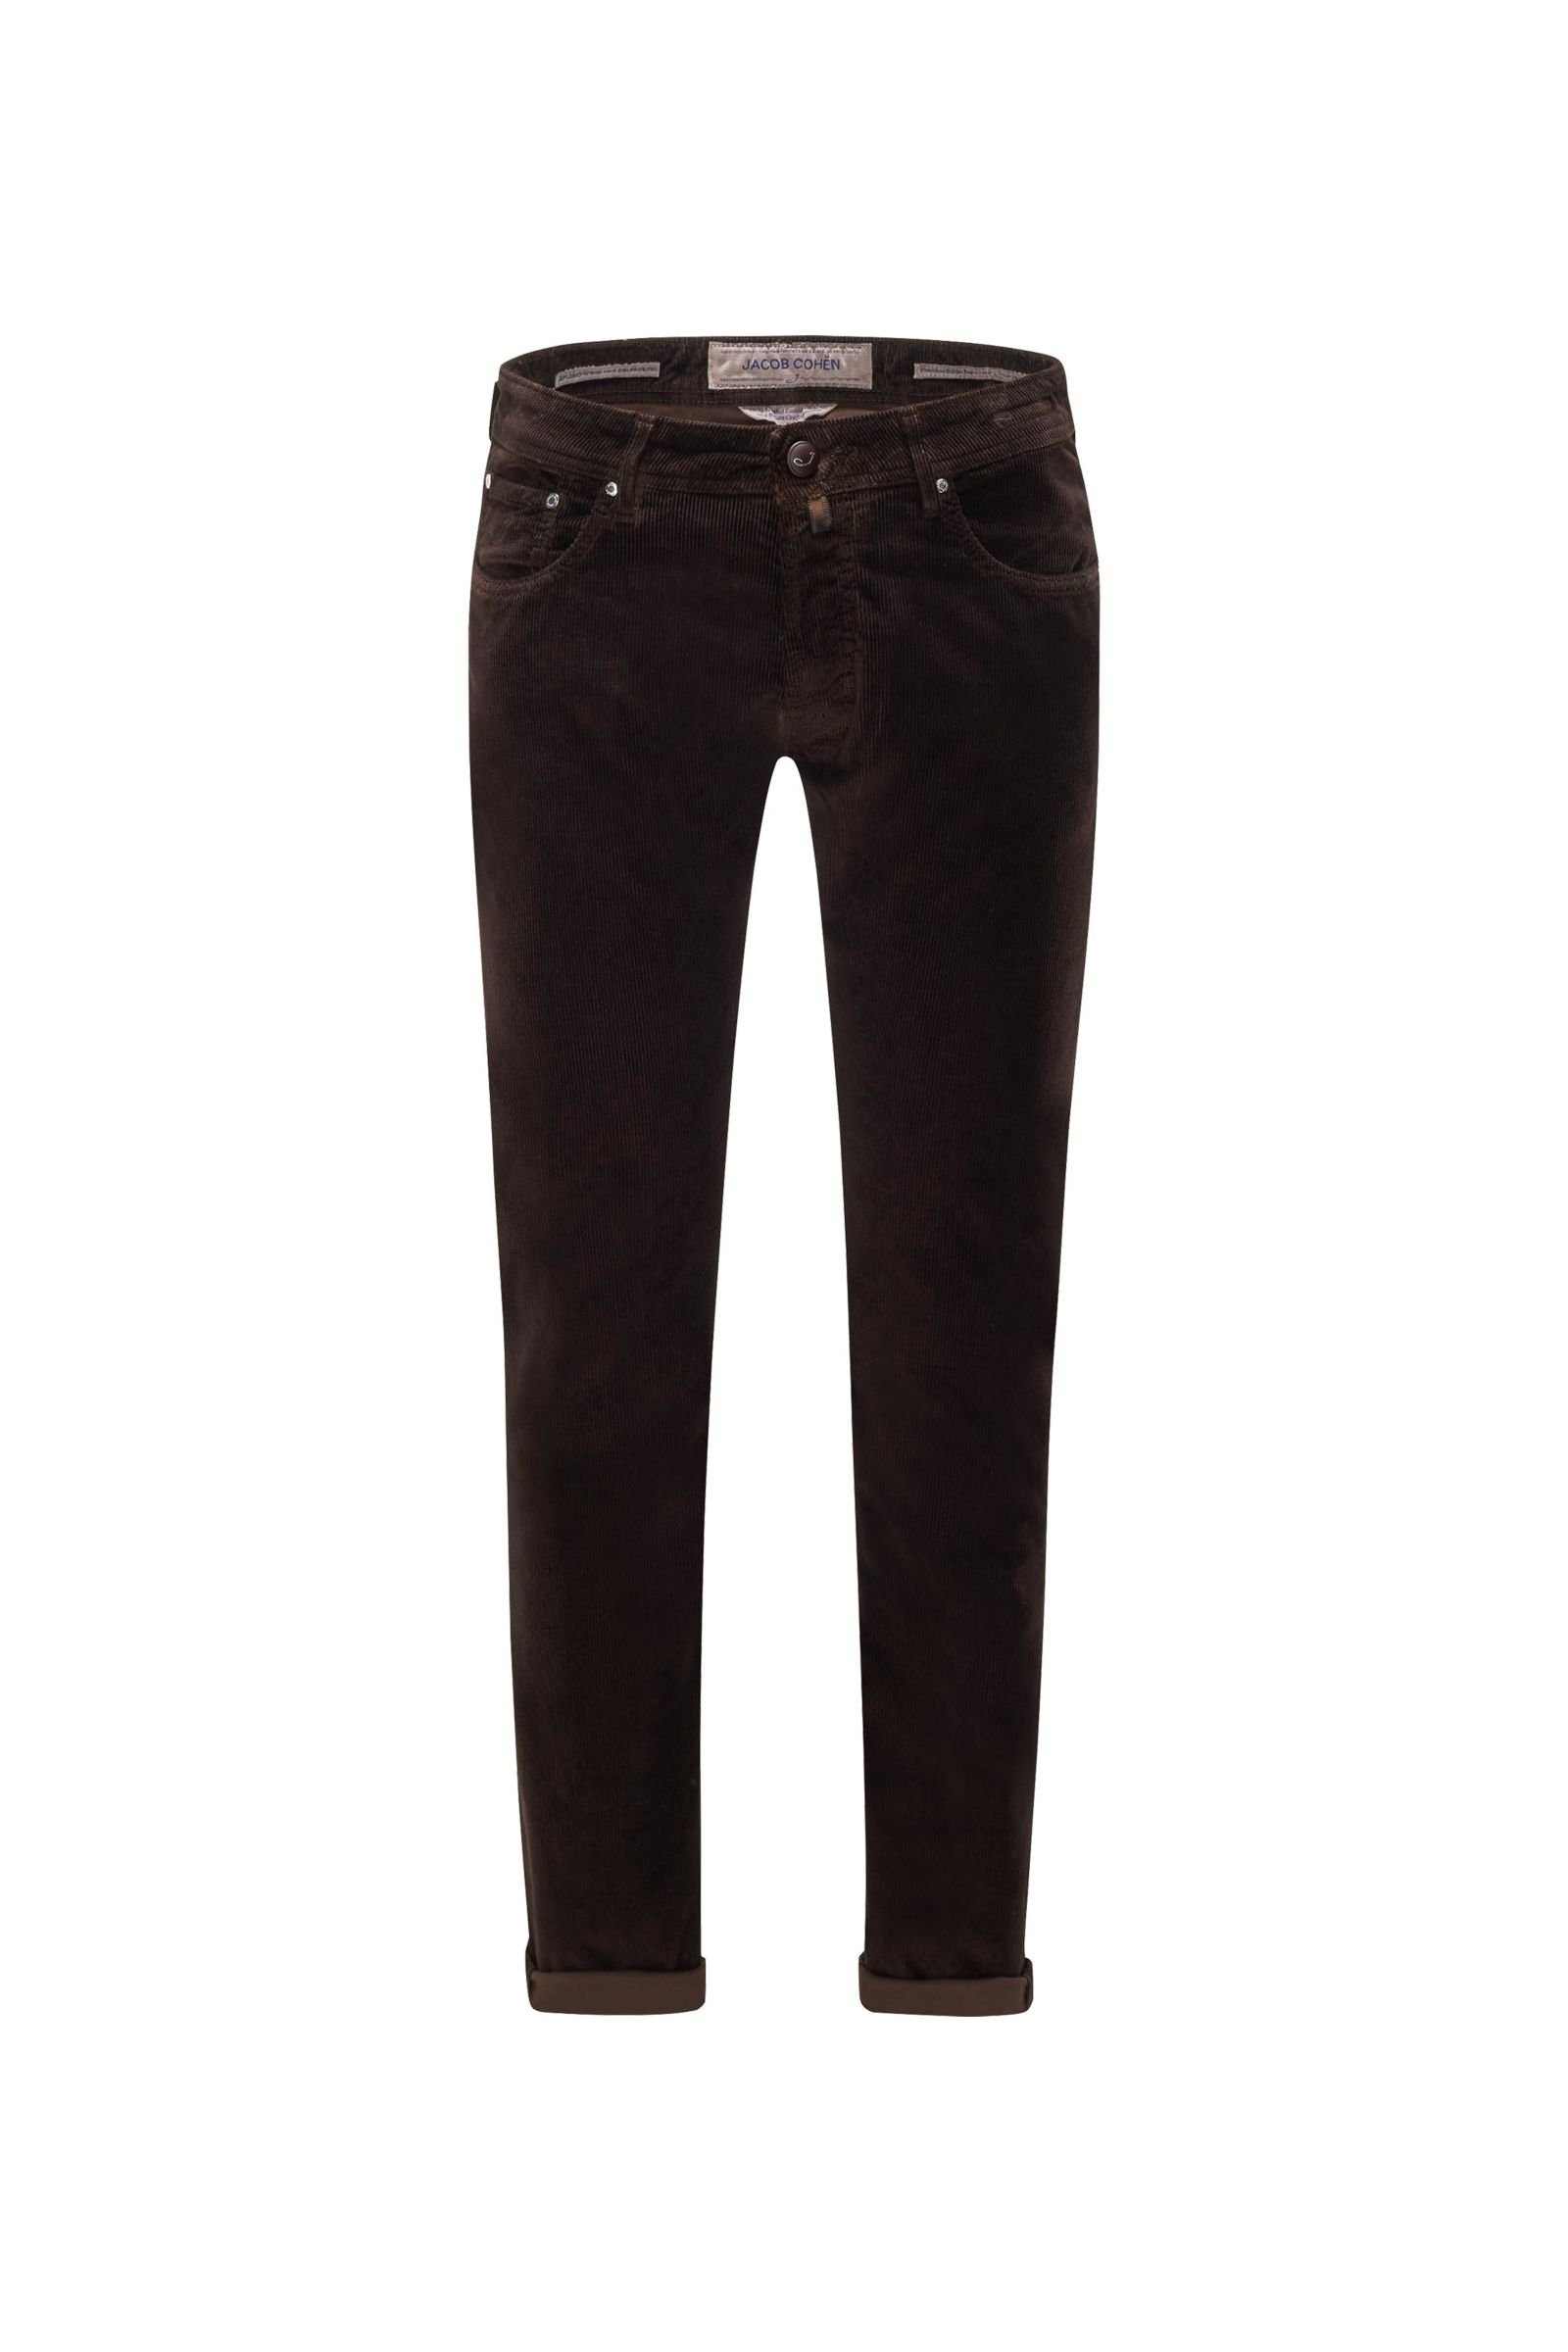 Corduroy trousers ‘J688 Comfort Slim Fit’ dark brown